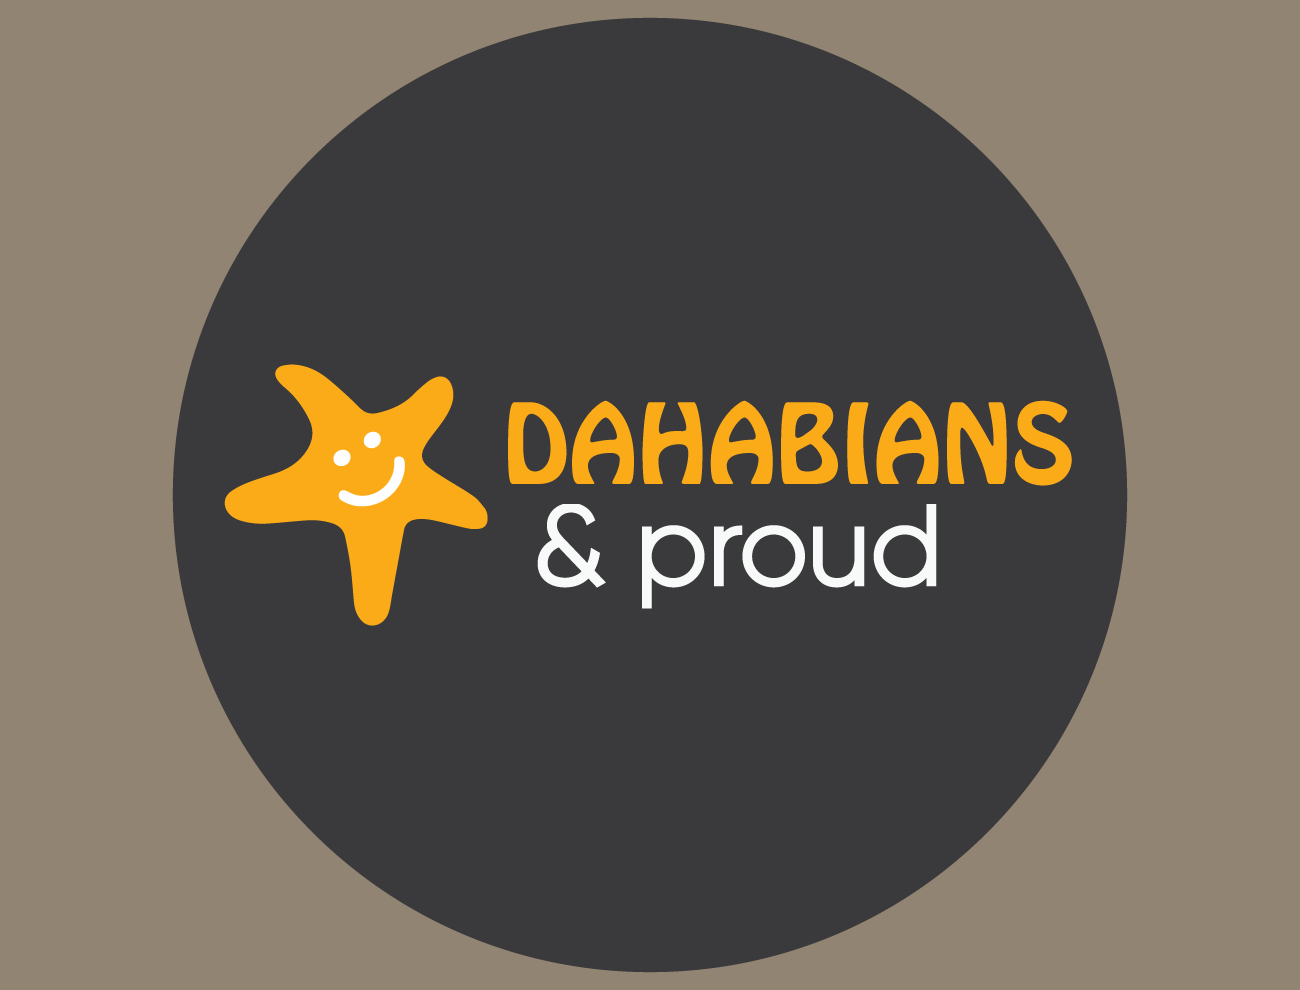 Dahabians & proud